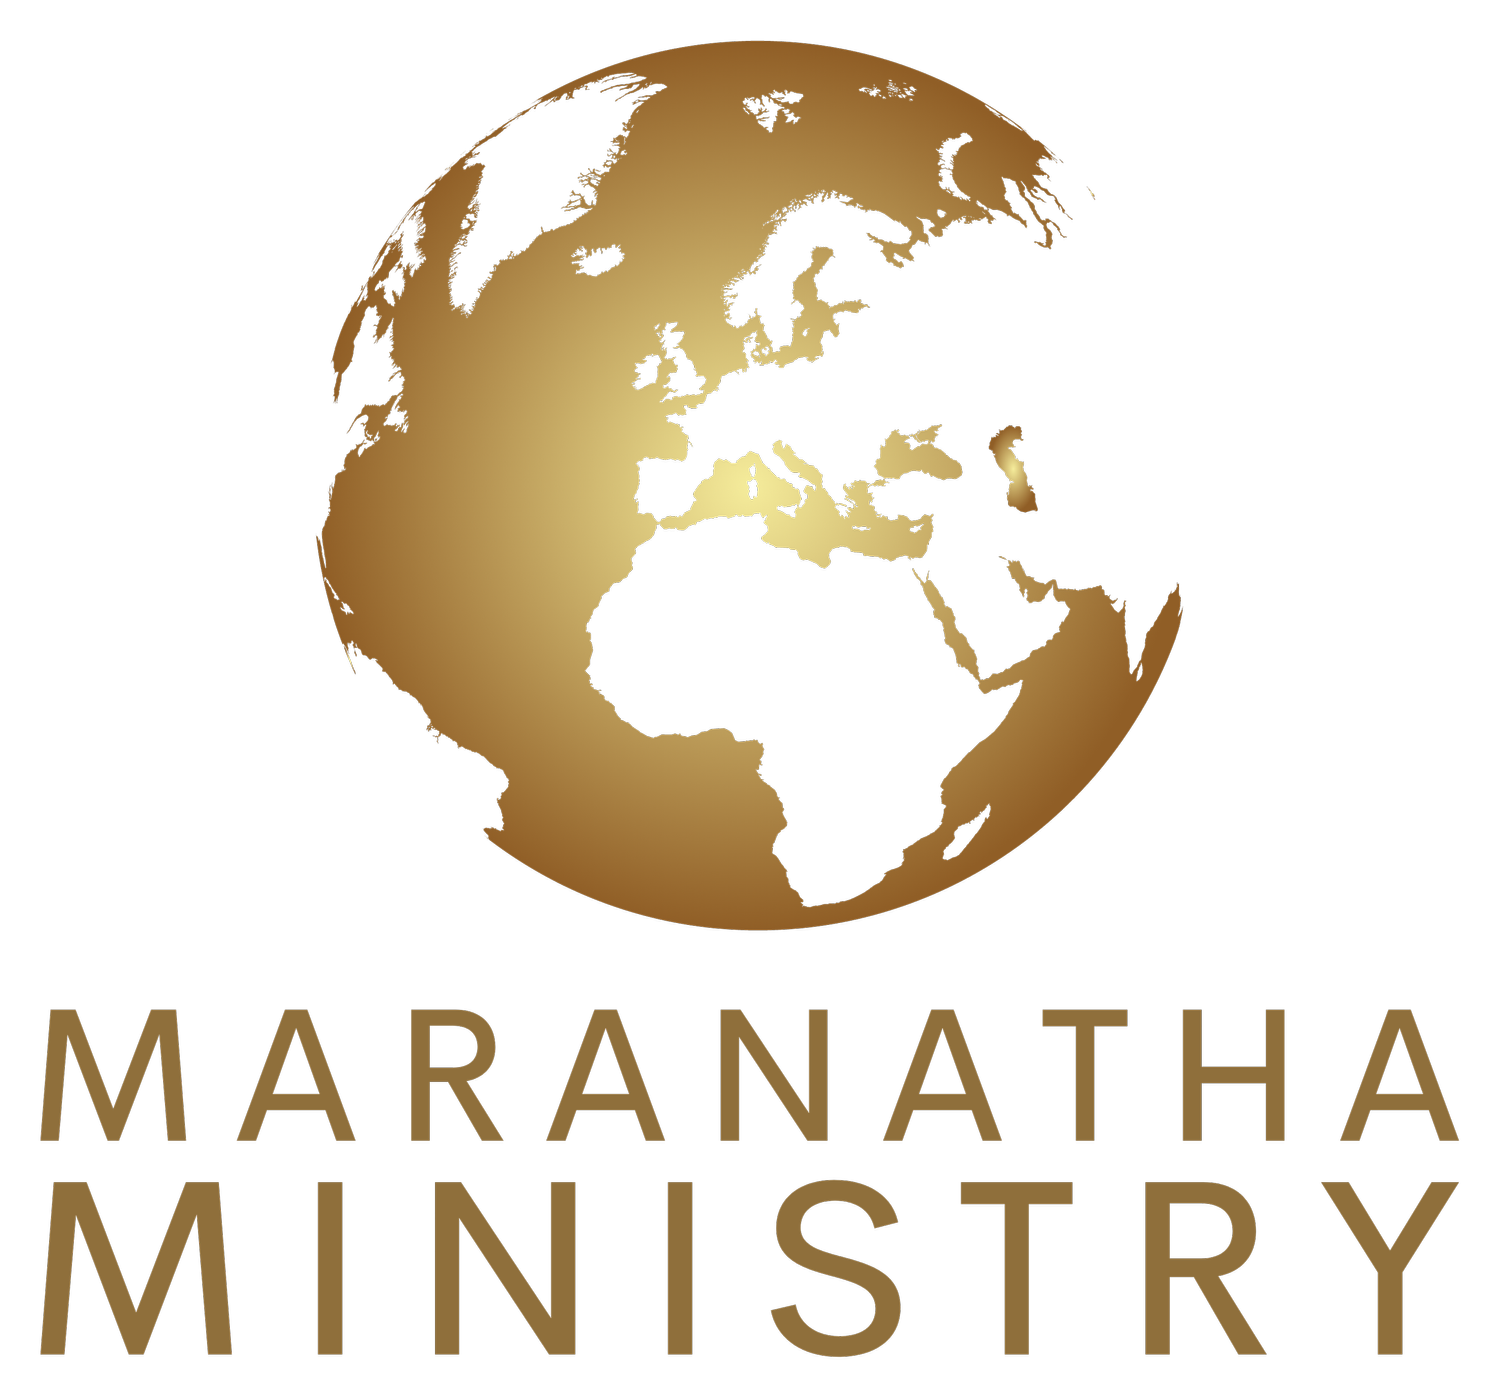 Maranatha Ministry